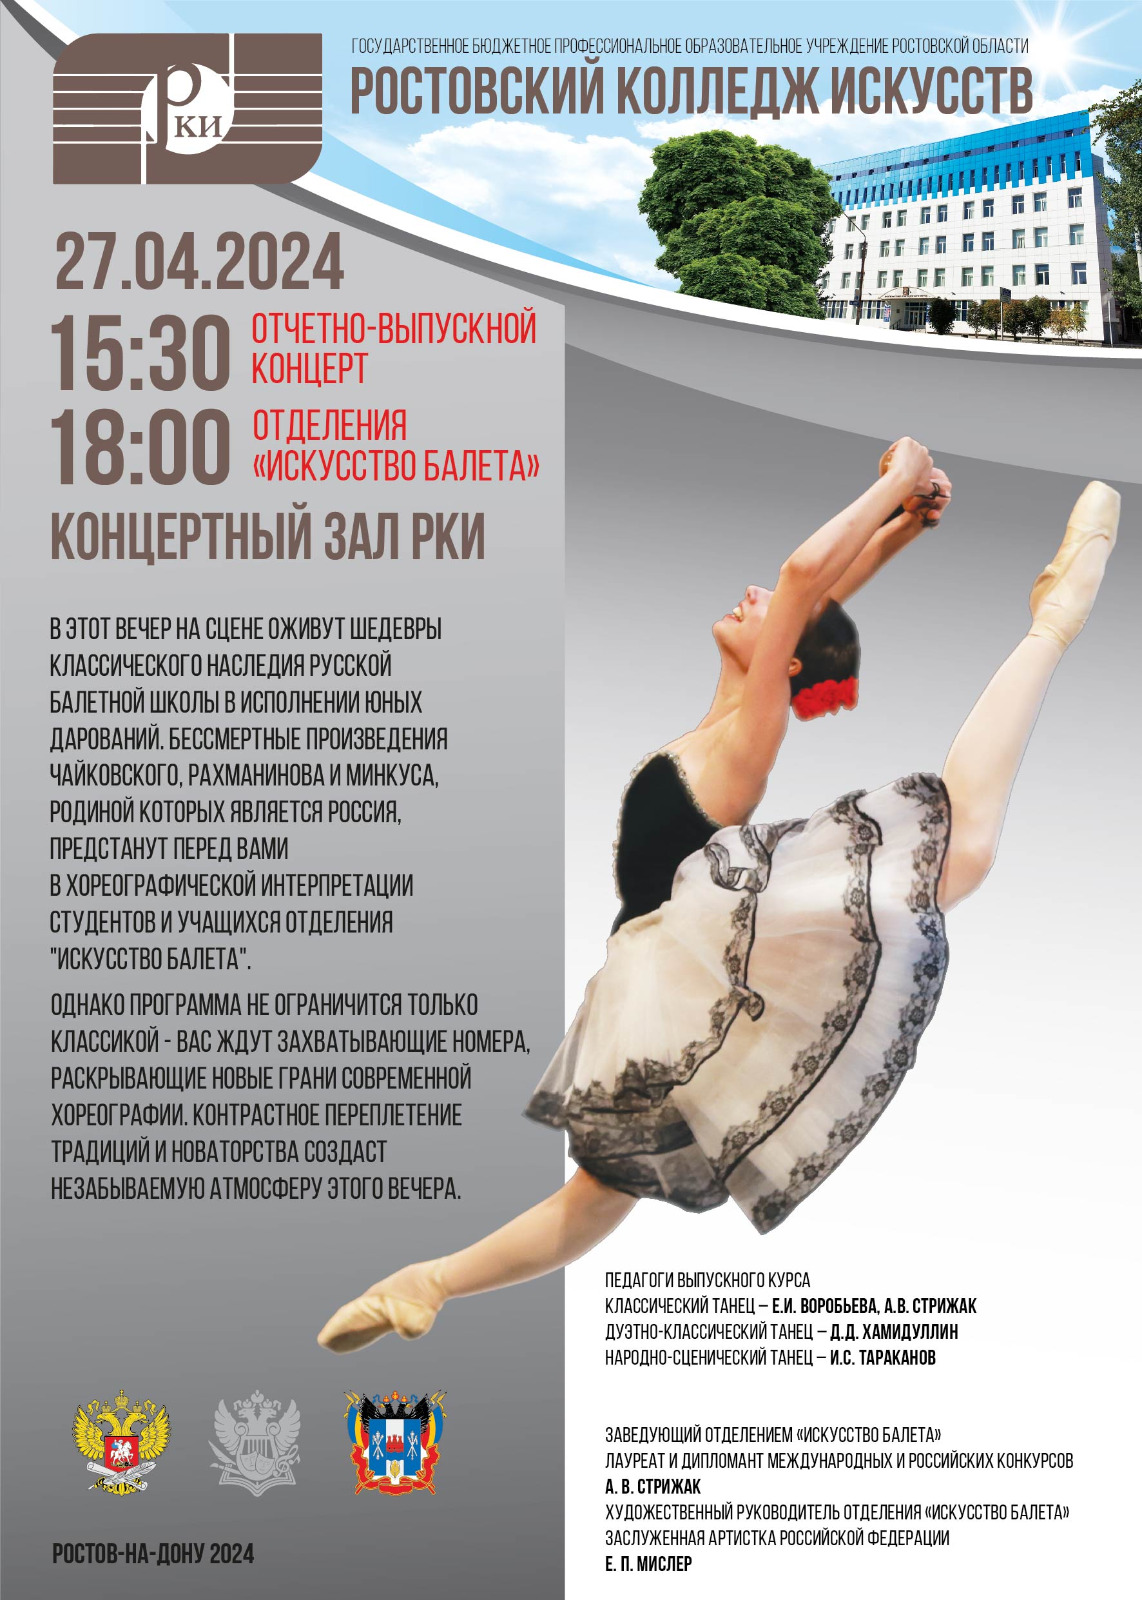 Отчетный концерт отделения "Искусство балета" 